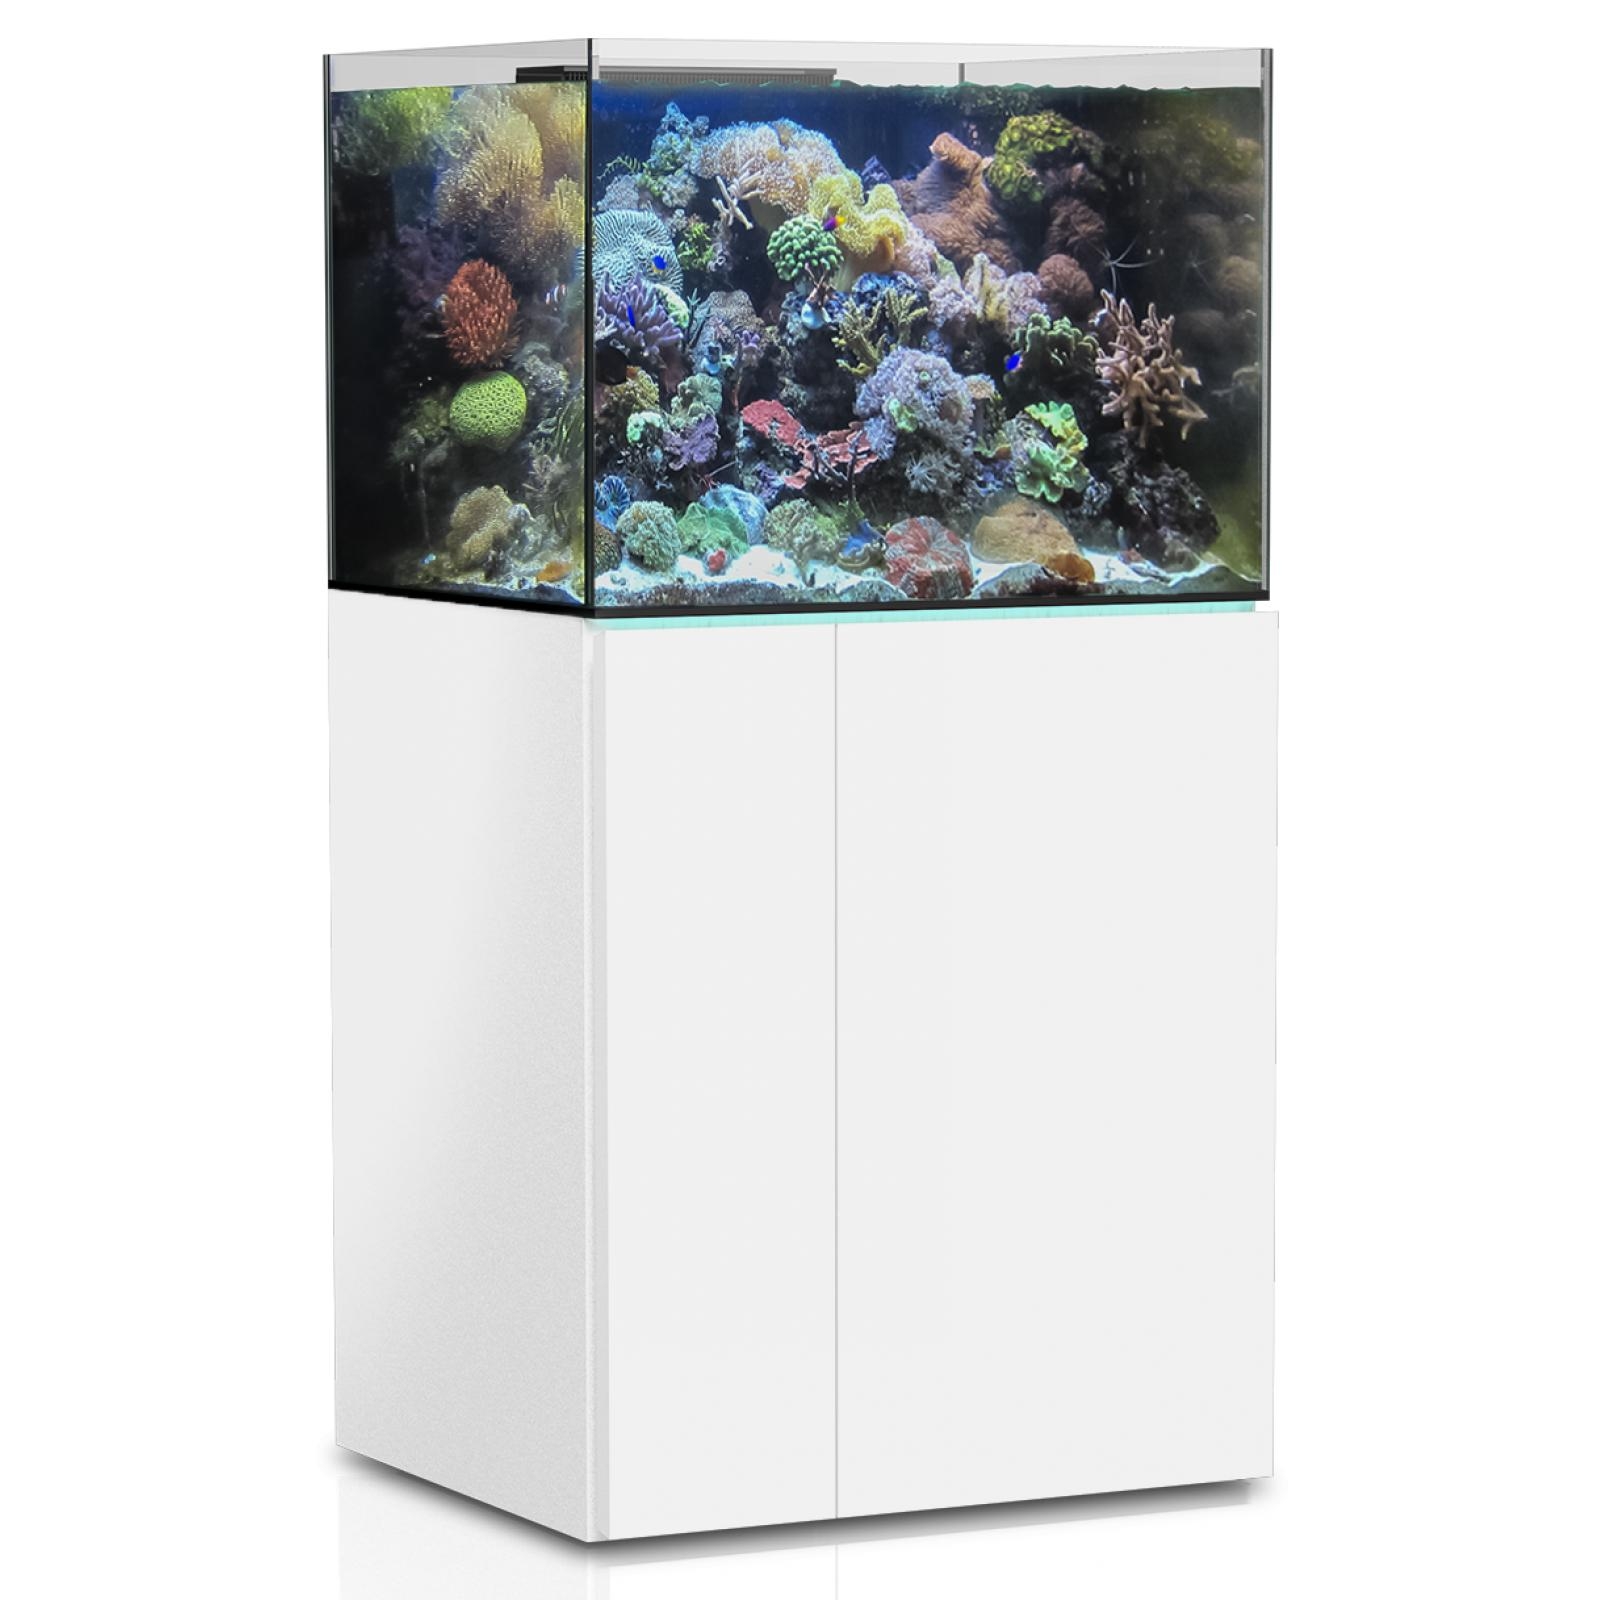  Aqua Medic Aquarium - Armatus 575 XD white